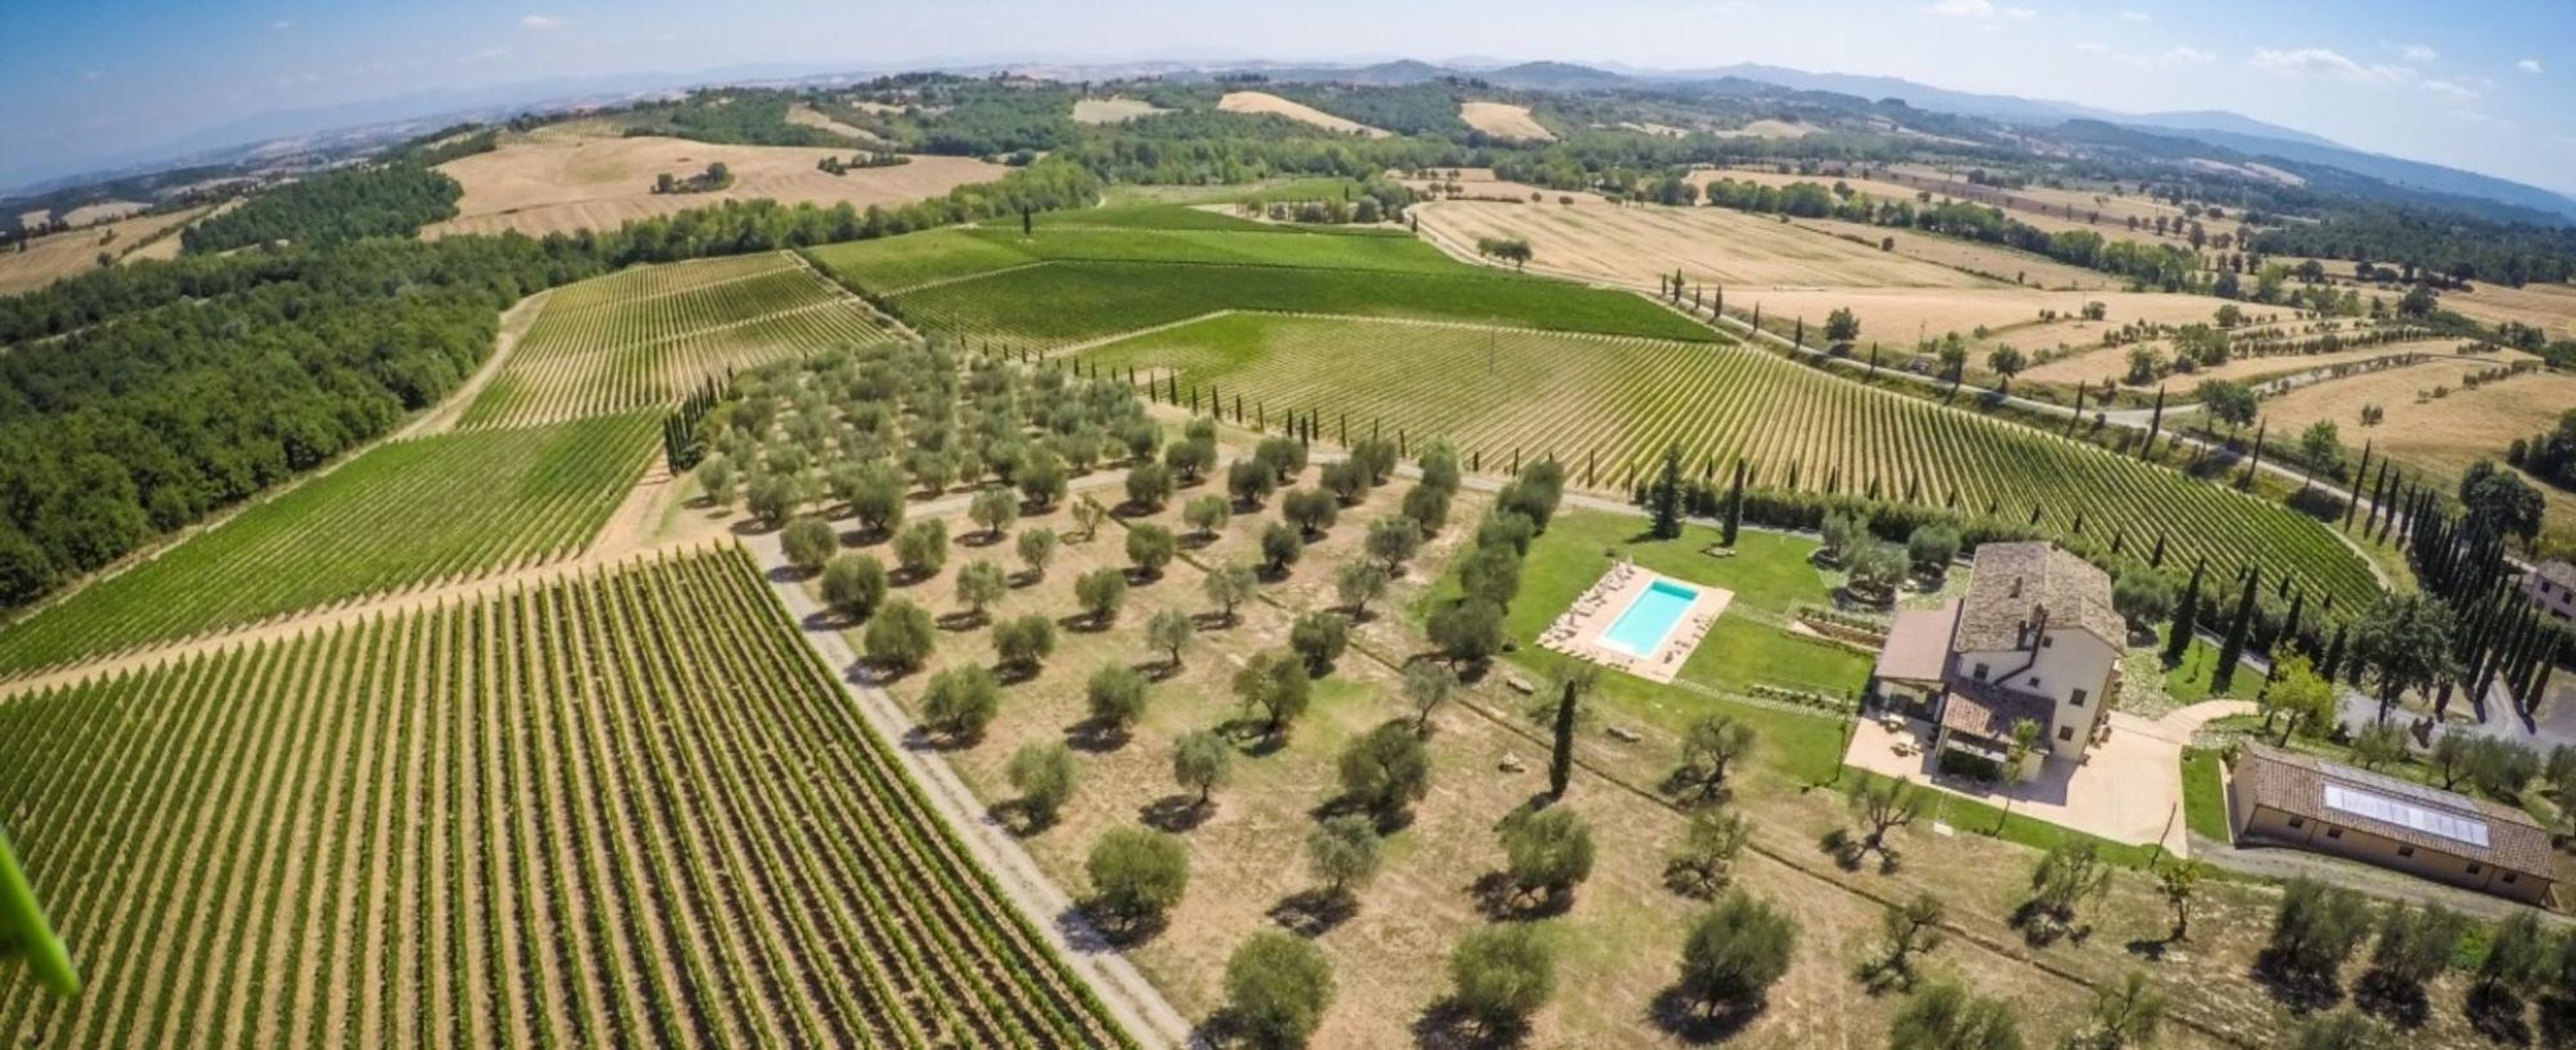 Property Image 1 - Villa Le Buche - Luxury   Spa in Sarteano  SI  Tuscany-VILLA LE BUCHE